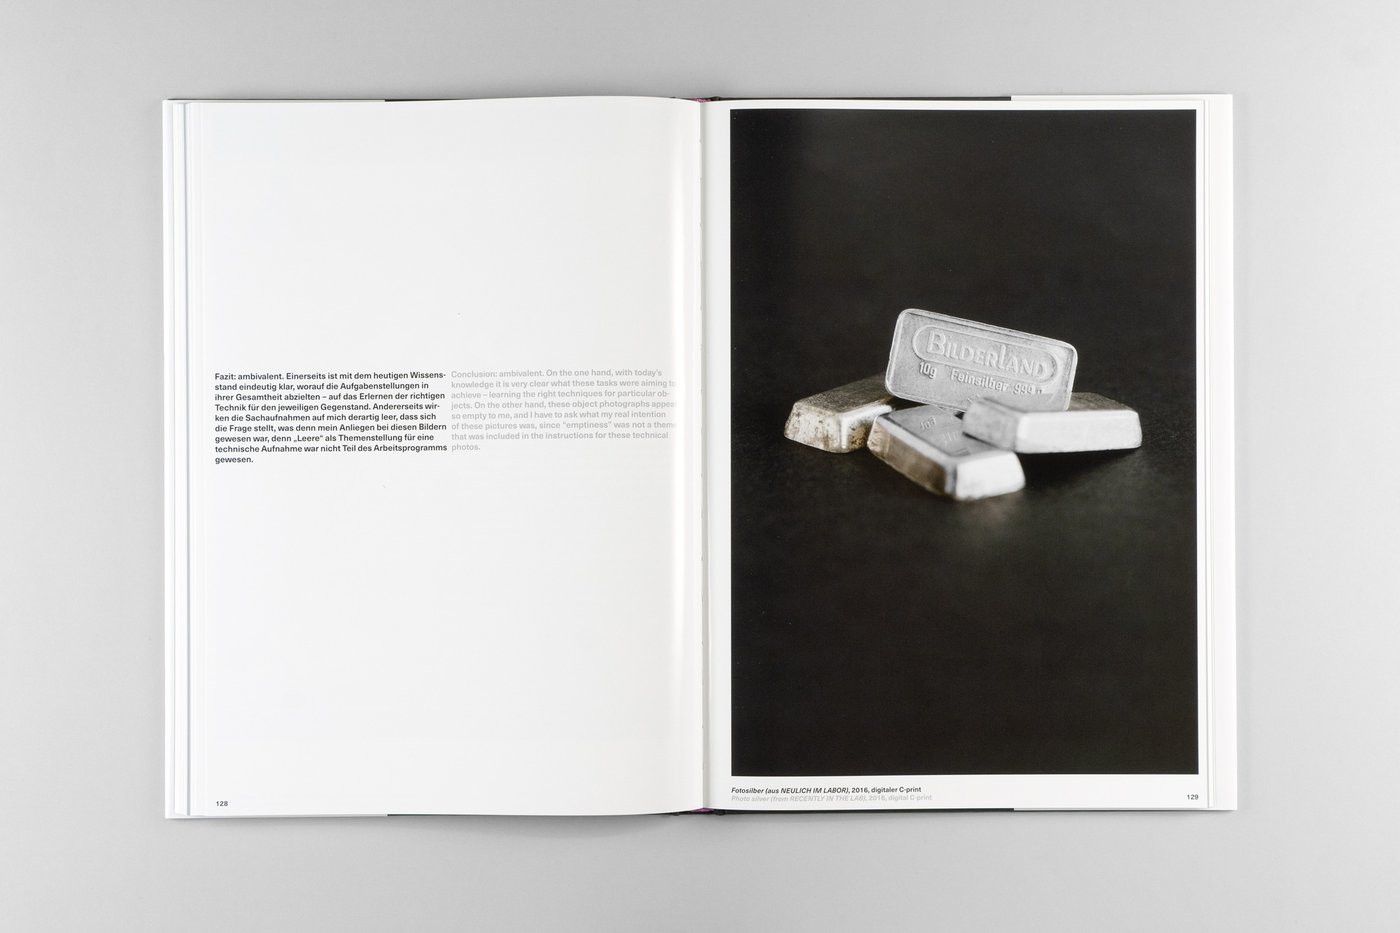 Doppelseite aus dem Buch Fotografie als Motiv mit dem Bildbeitrag von Claudia Rohrauer mit Text und einem Sofortbild von vier 10g-Silberbarren mit dem Aufdruck „Bilderland“.